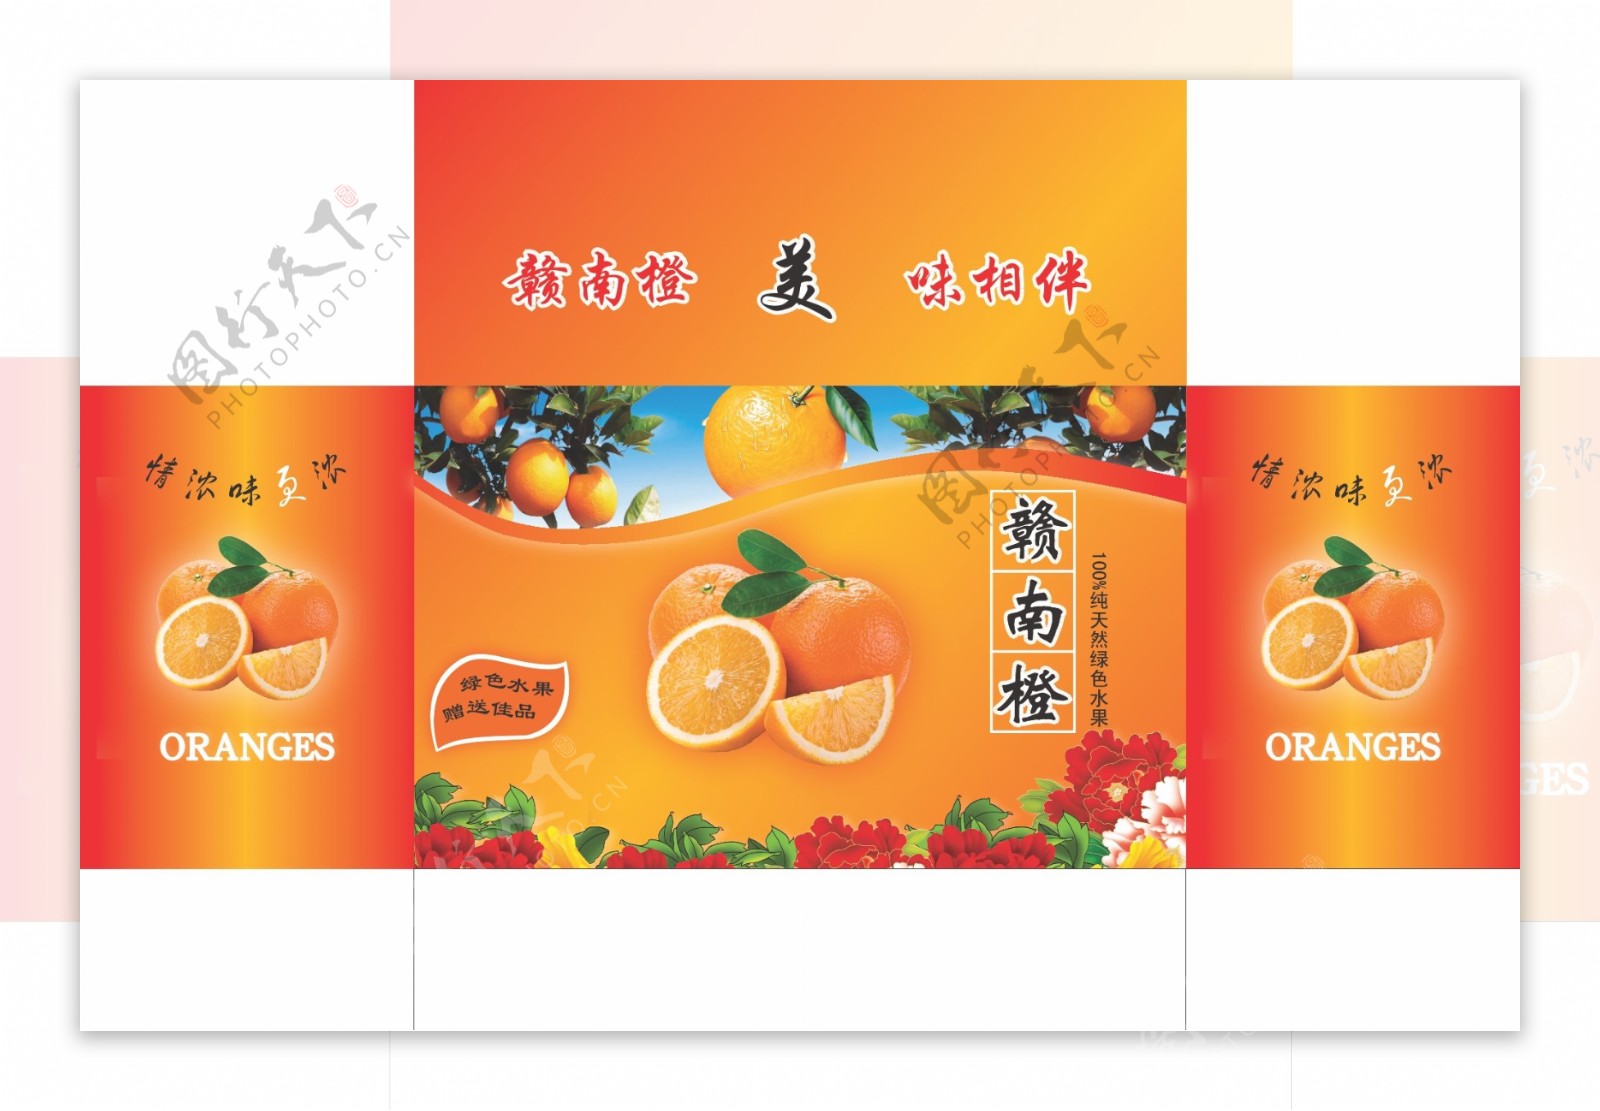 橙盒包装图片